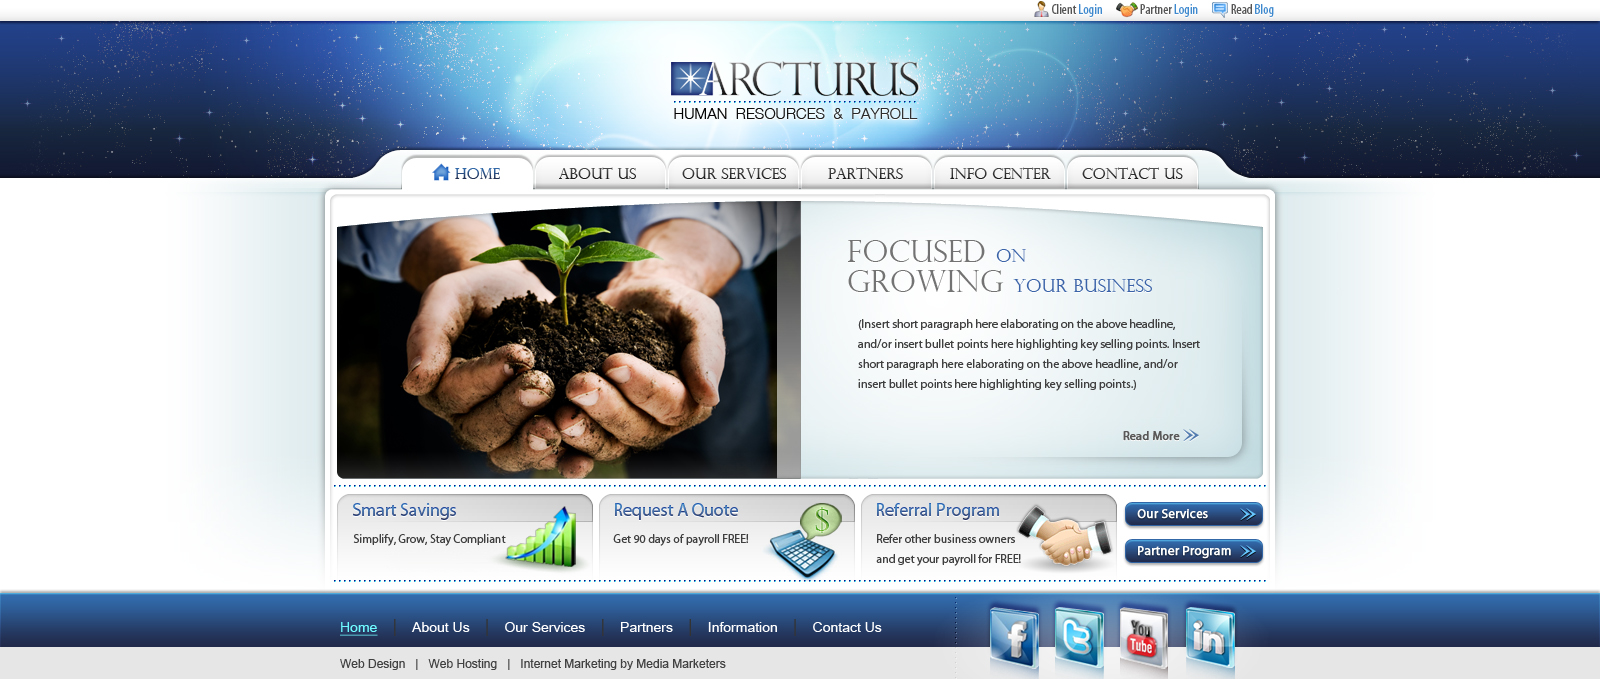 Arcturus website design v.3